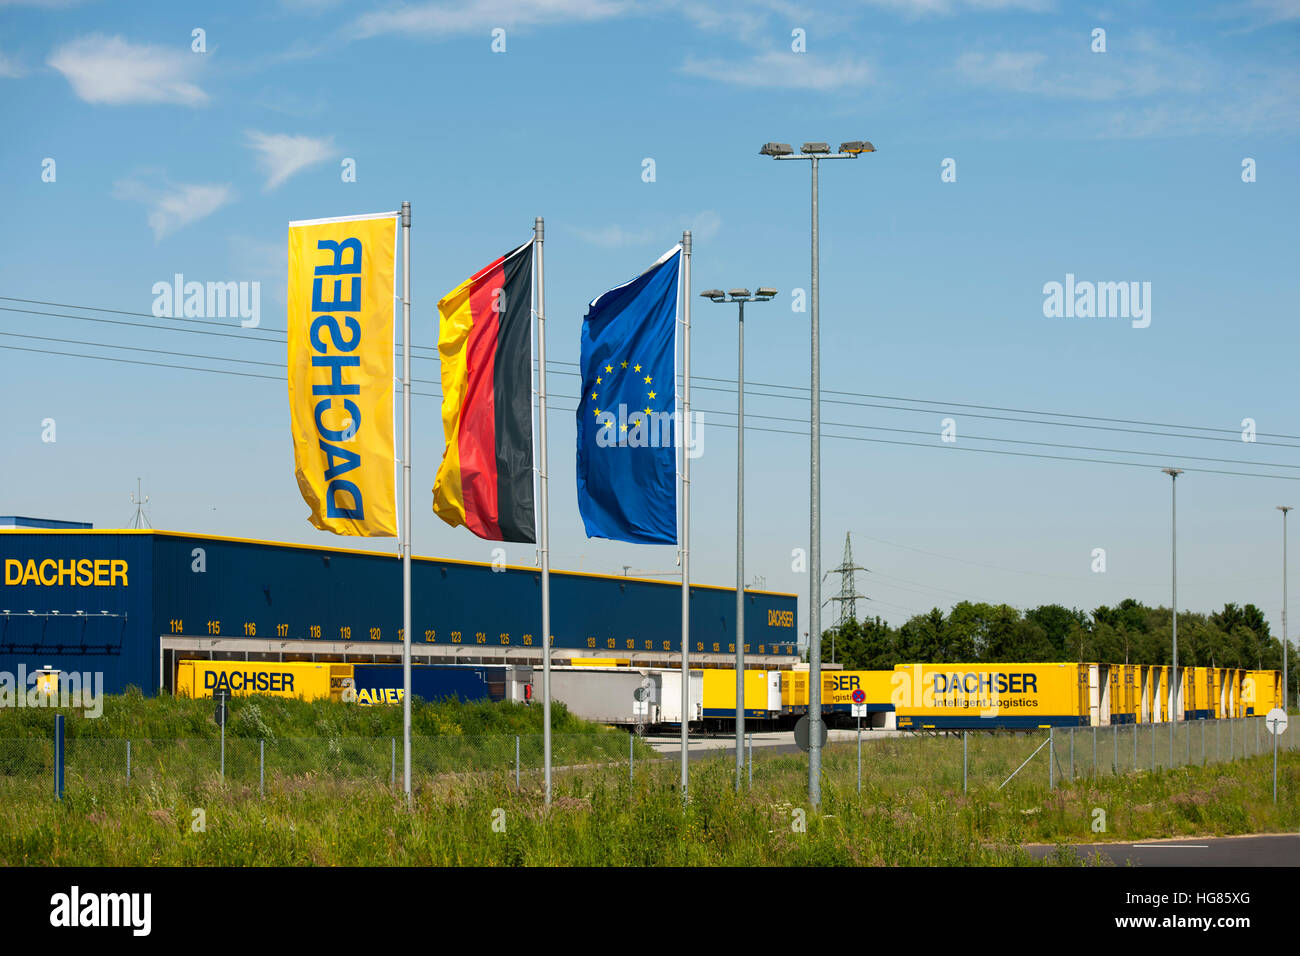 Deutschland, NRW, Städteregion Aachen, Alsdorf-Schaufenberg, Logistik-Unternehmen Dachser Stock Photo